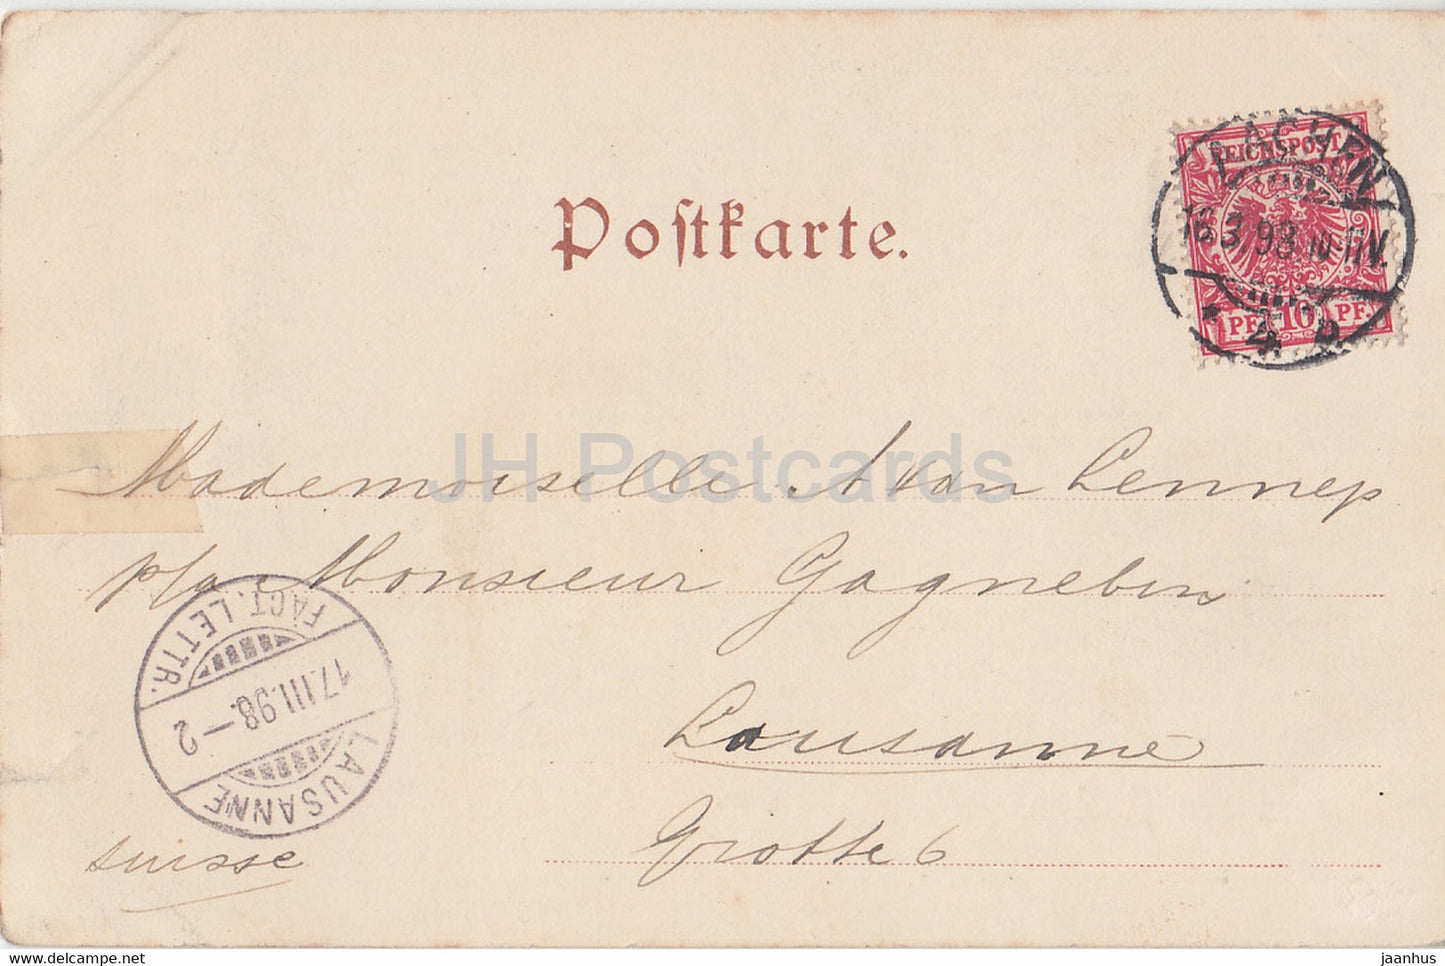 Gruss aus Aachen - Dom - Cathédrale - carte postale ancienne - 1898 - Allemagne - utilisé